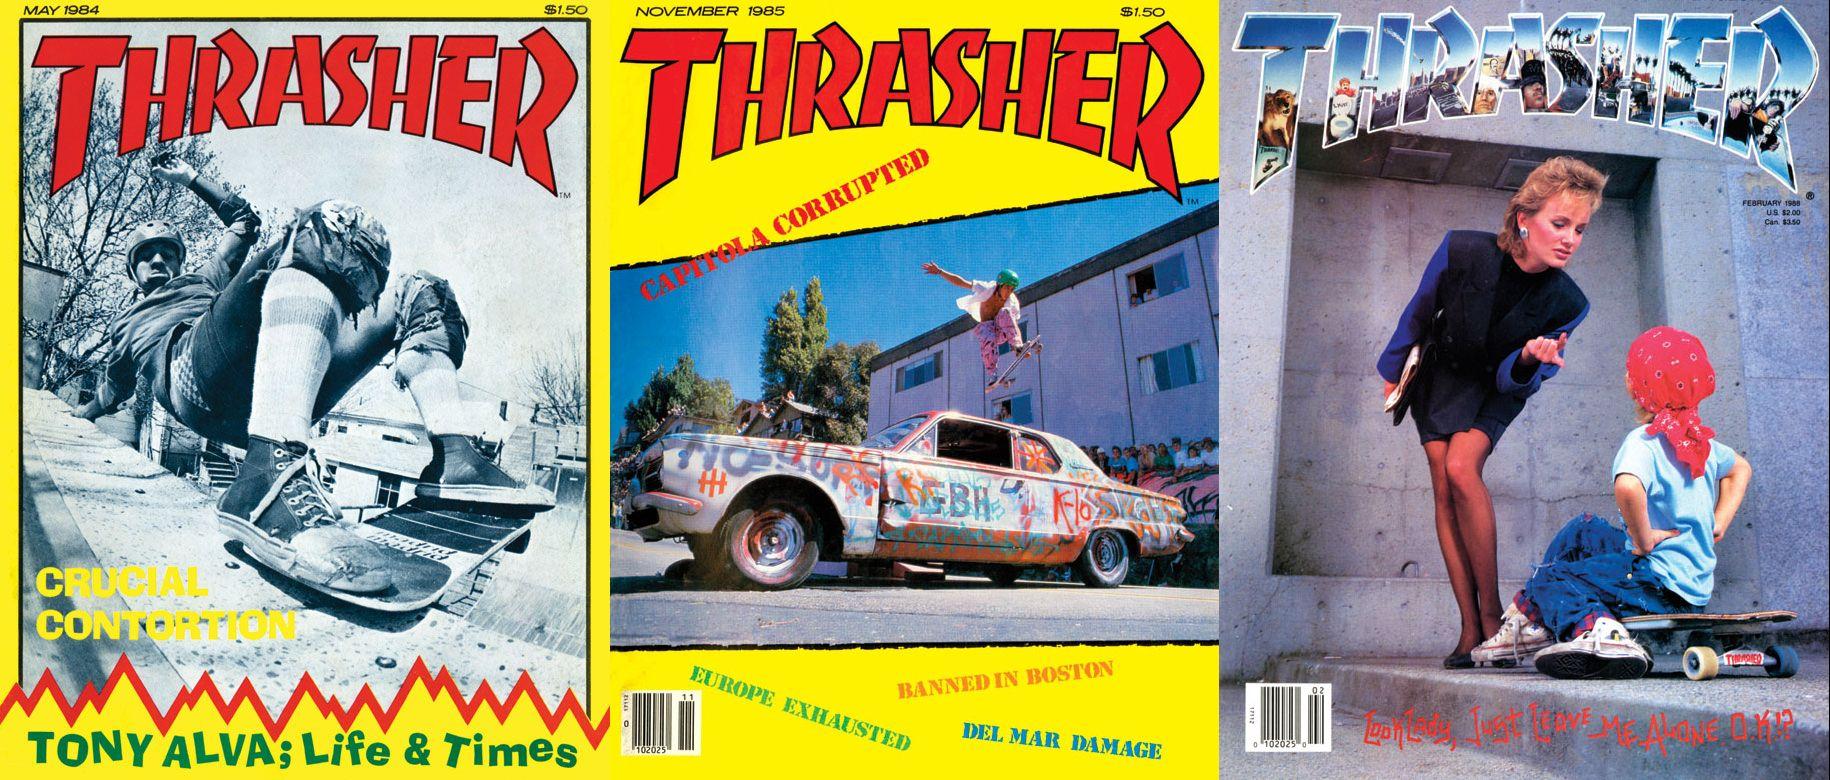 Old Thrasher Logo - Skate or Die! Thrasher Magazine Archives Now Online. CLPTeensburgh